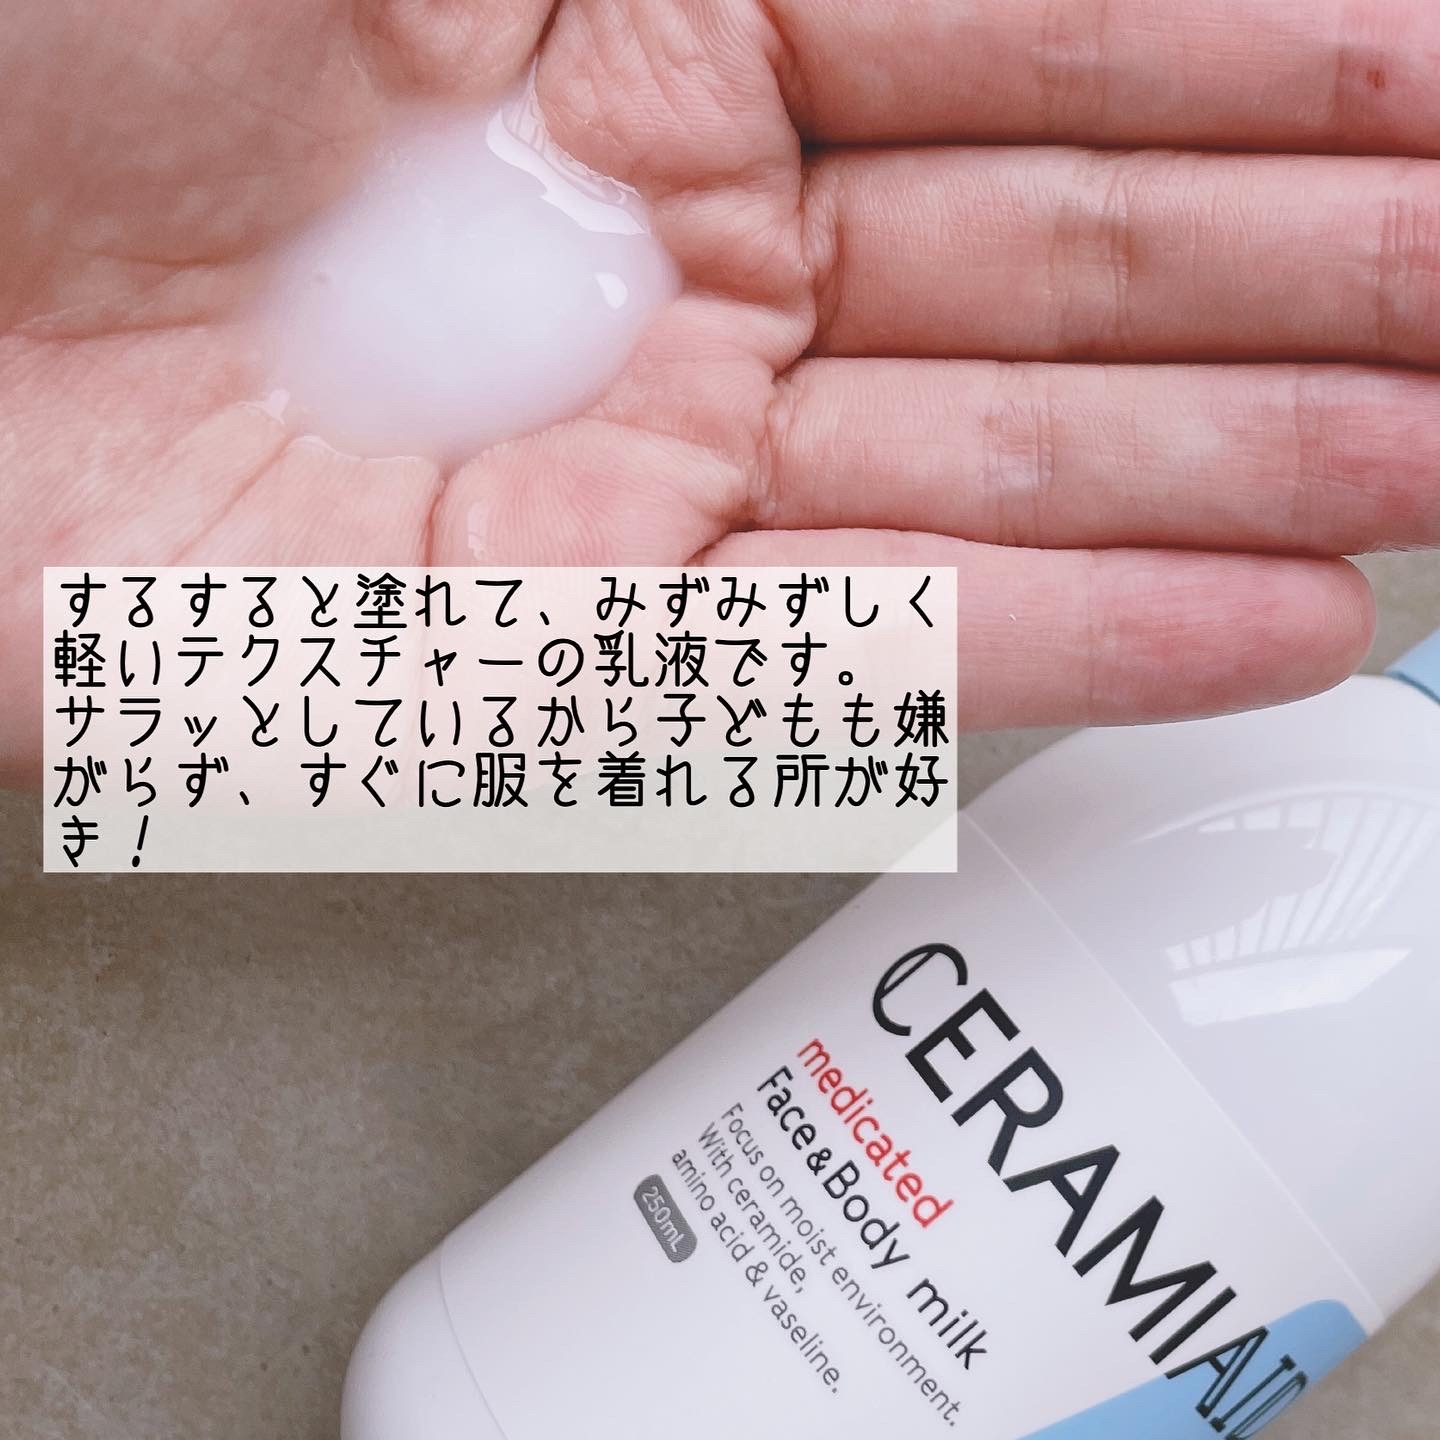 CERAMIAID(セラミエイド) 薬用スキンミルクの良い点・メリットに関するなゆさんの口コミ画像2